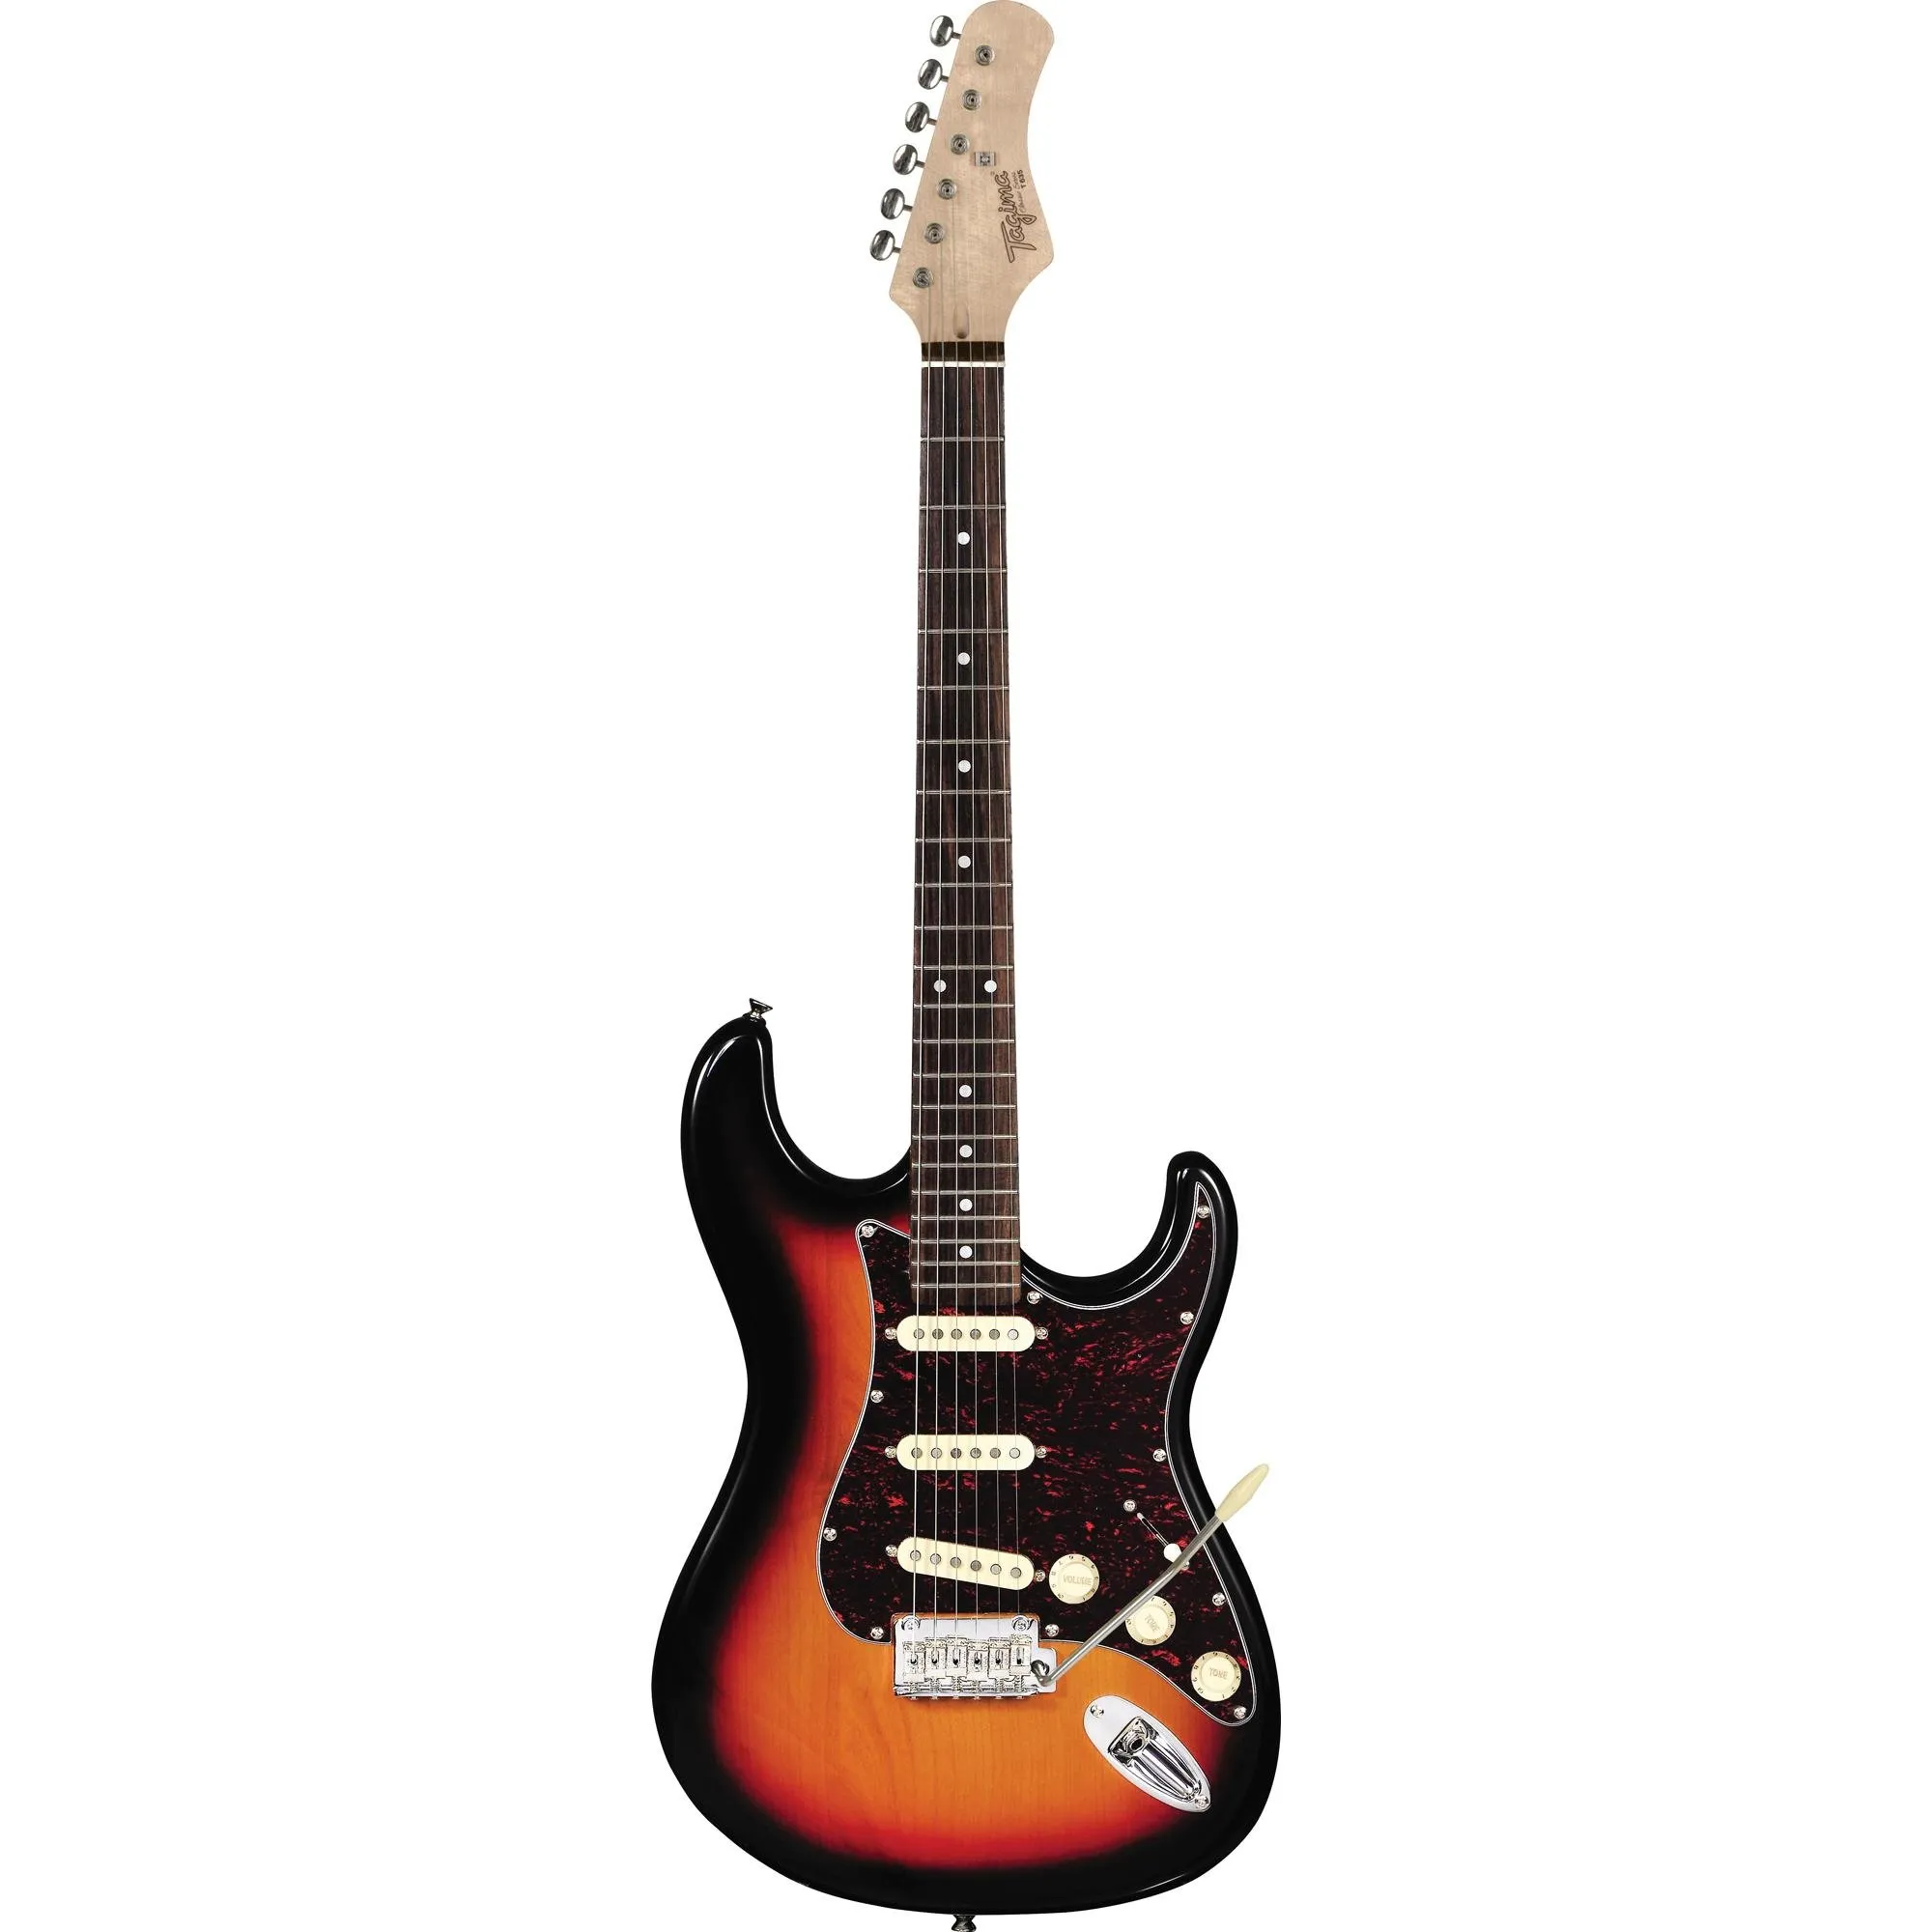 Guitarra Tagima T-635 Classic E/TT Sunburst por 1.719,99 à vista no boleto/pix ou parcele em até 12x sem juros. Compre na loja Mundomax!